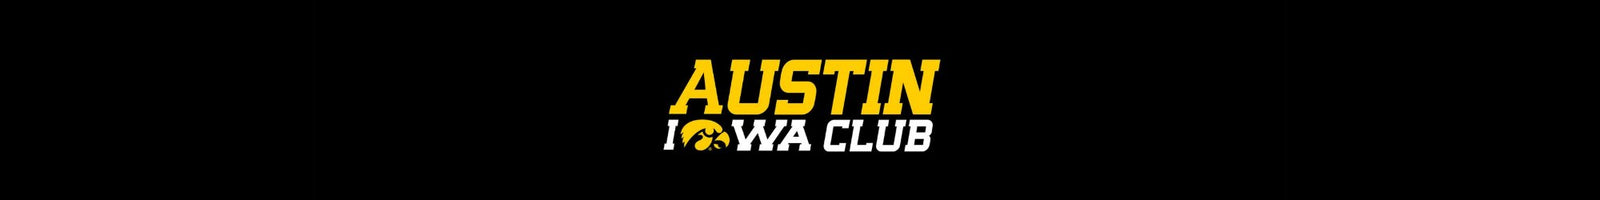 Austin Iowa Club